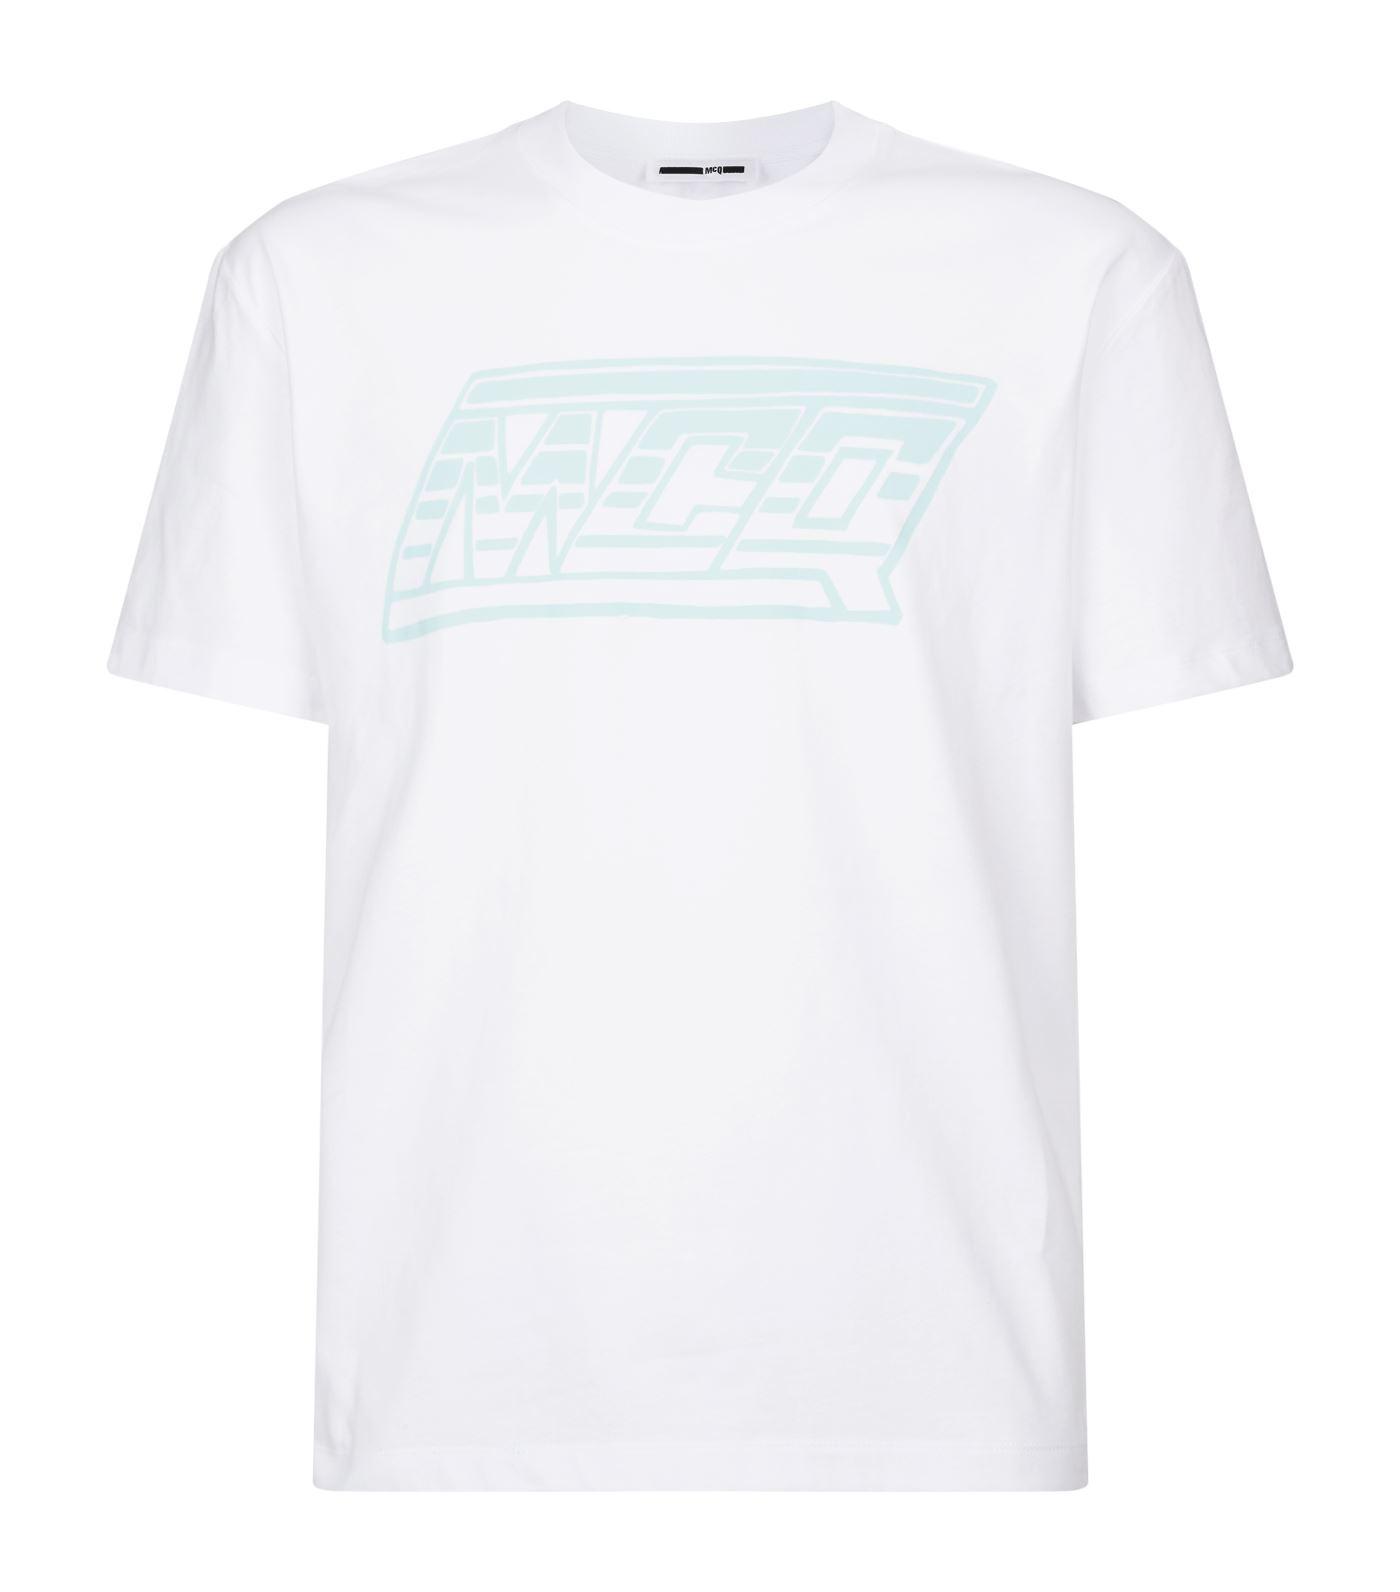 McQ Logo T-shirt in White for Men - Lyst